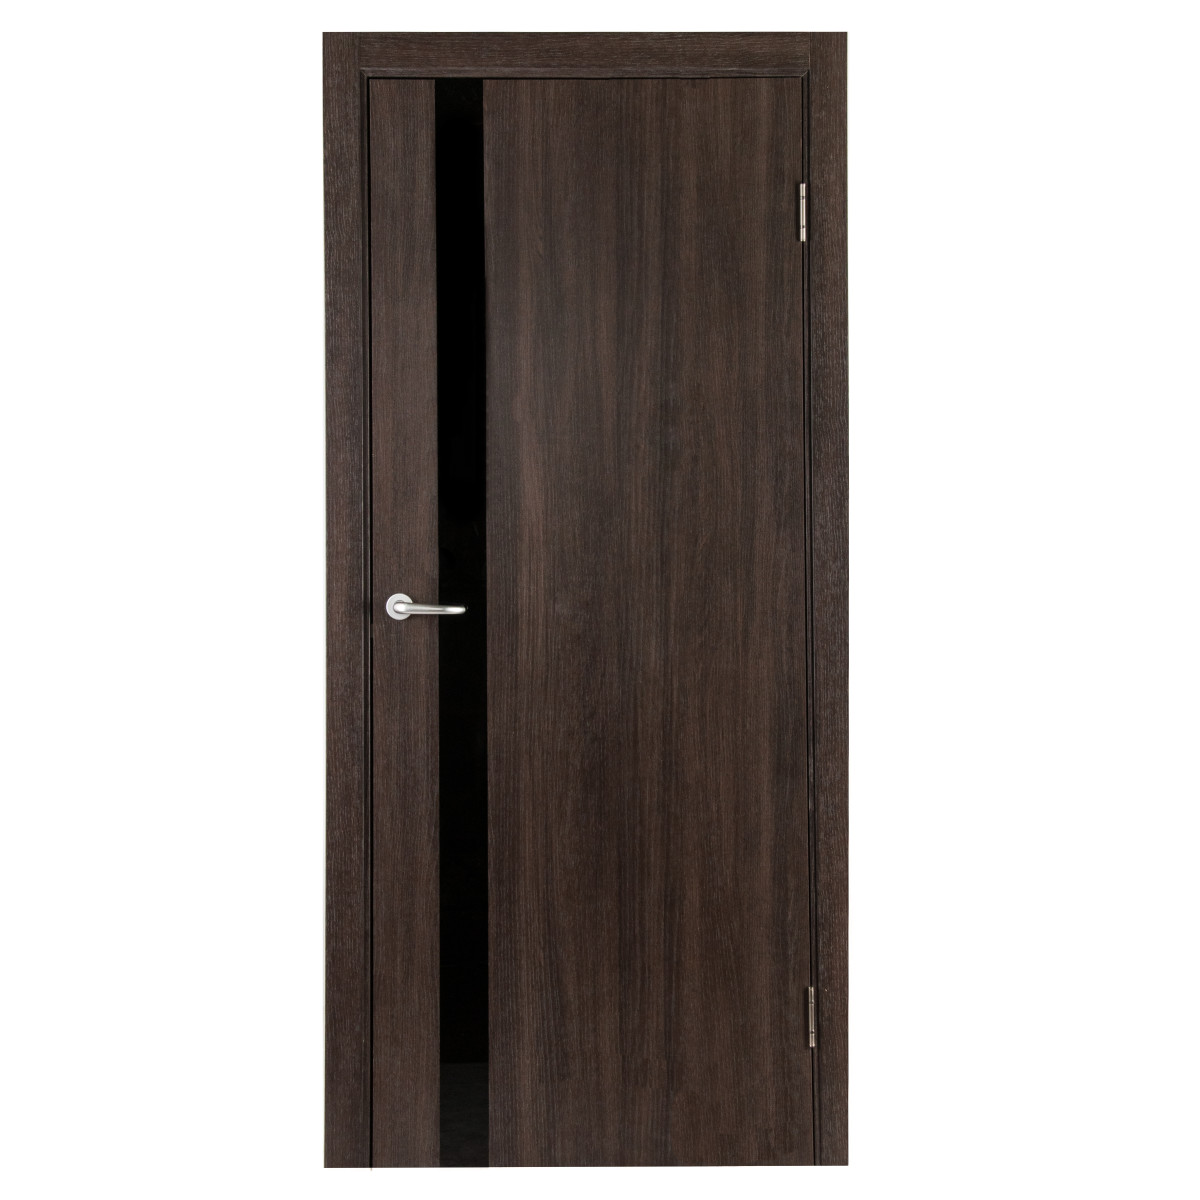 Дверь межкомнатная глухая с замком и петлями в комплекте Мирра 80x200 см, Hardflex, цвет дуб кастелло